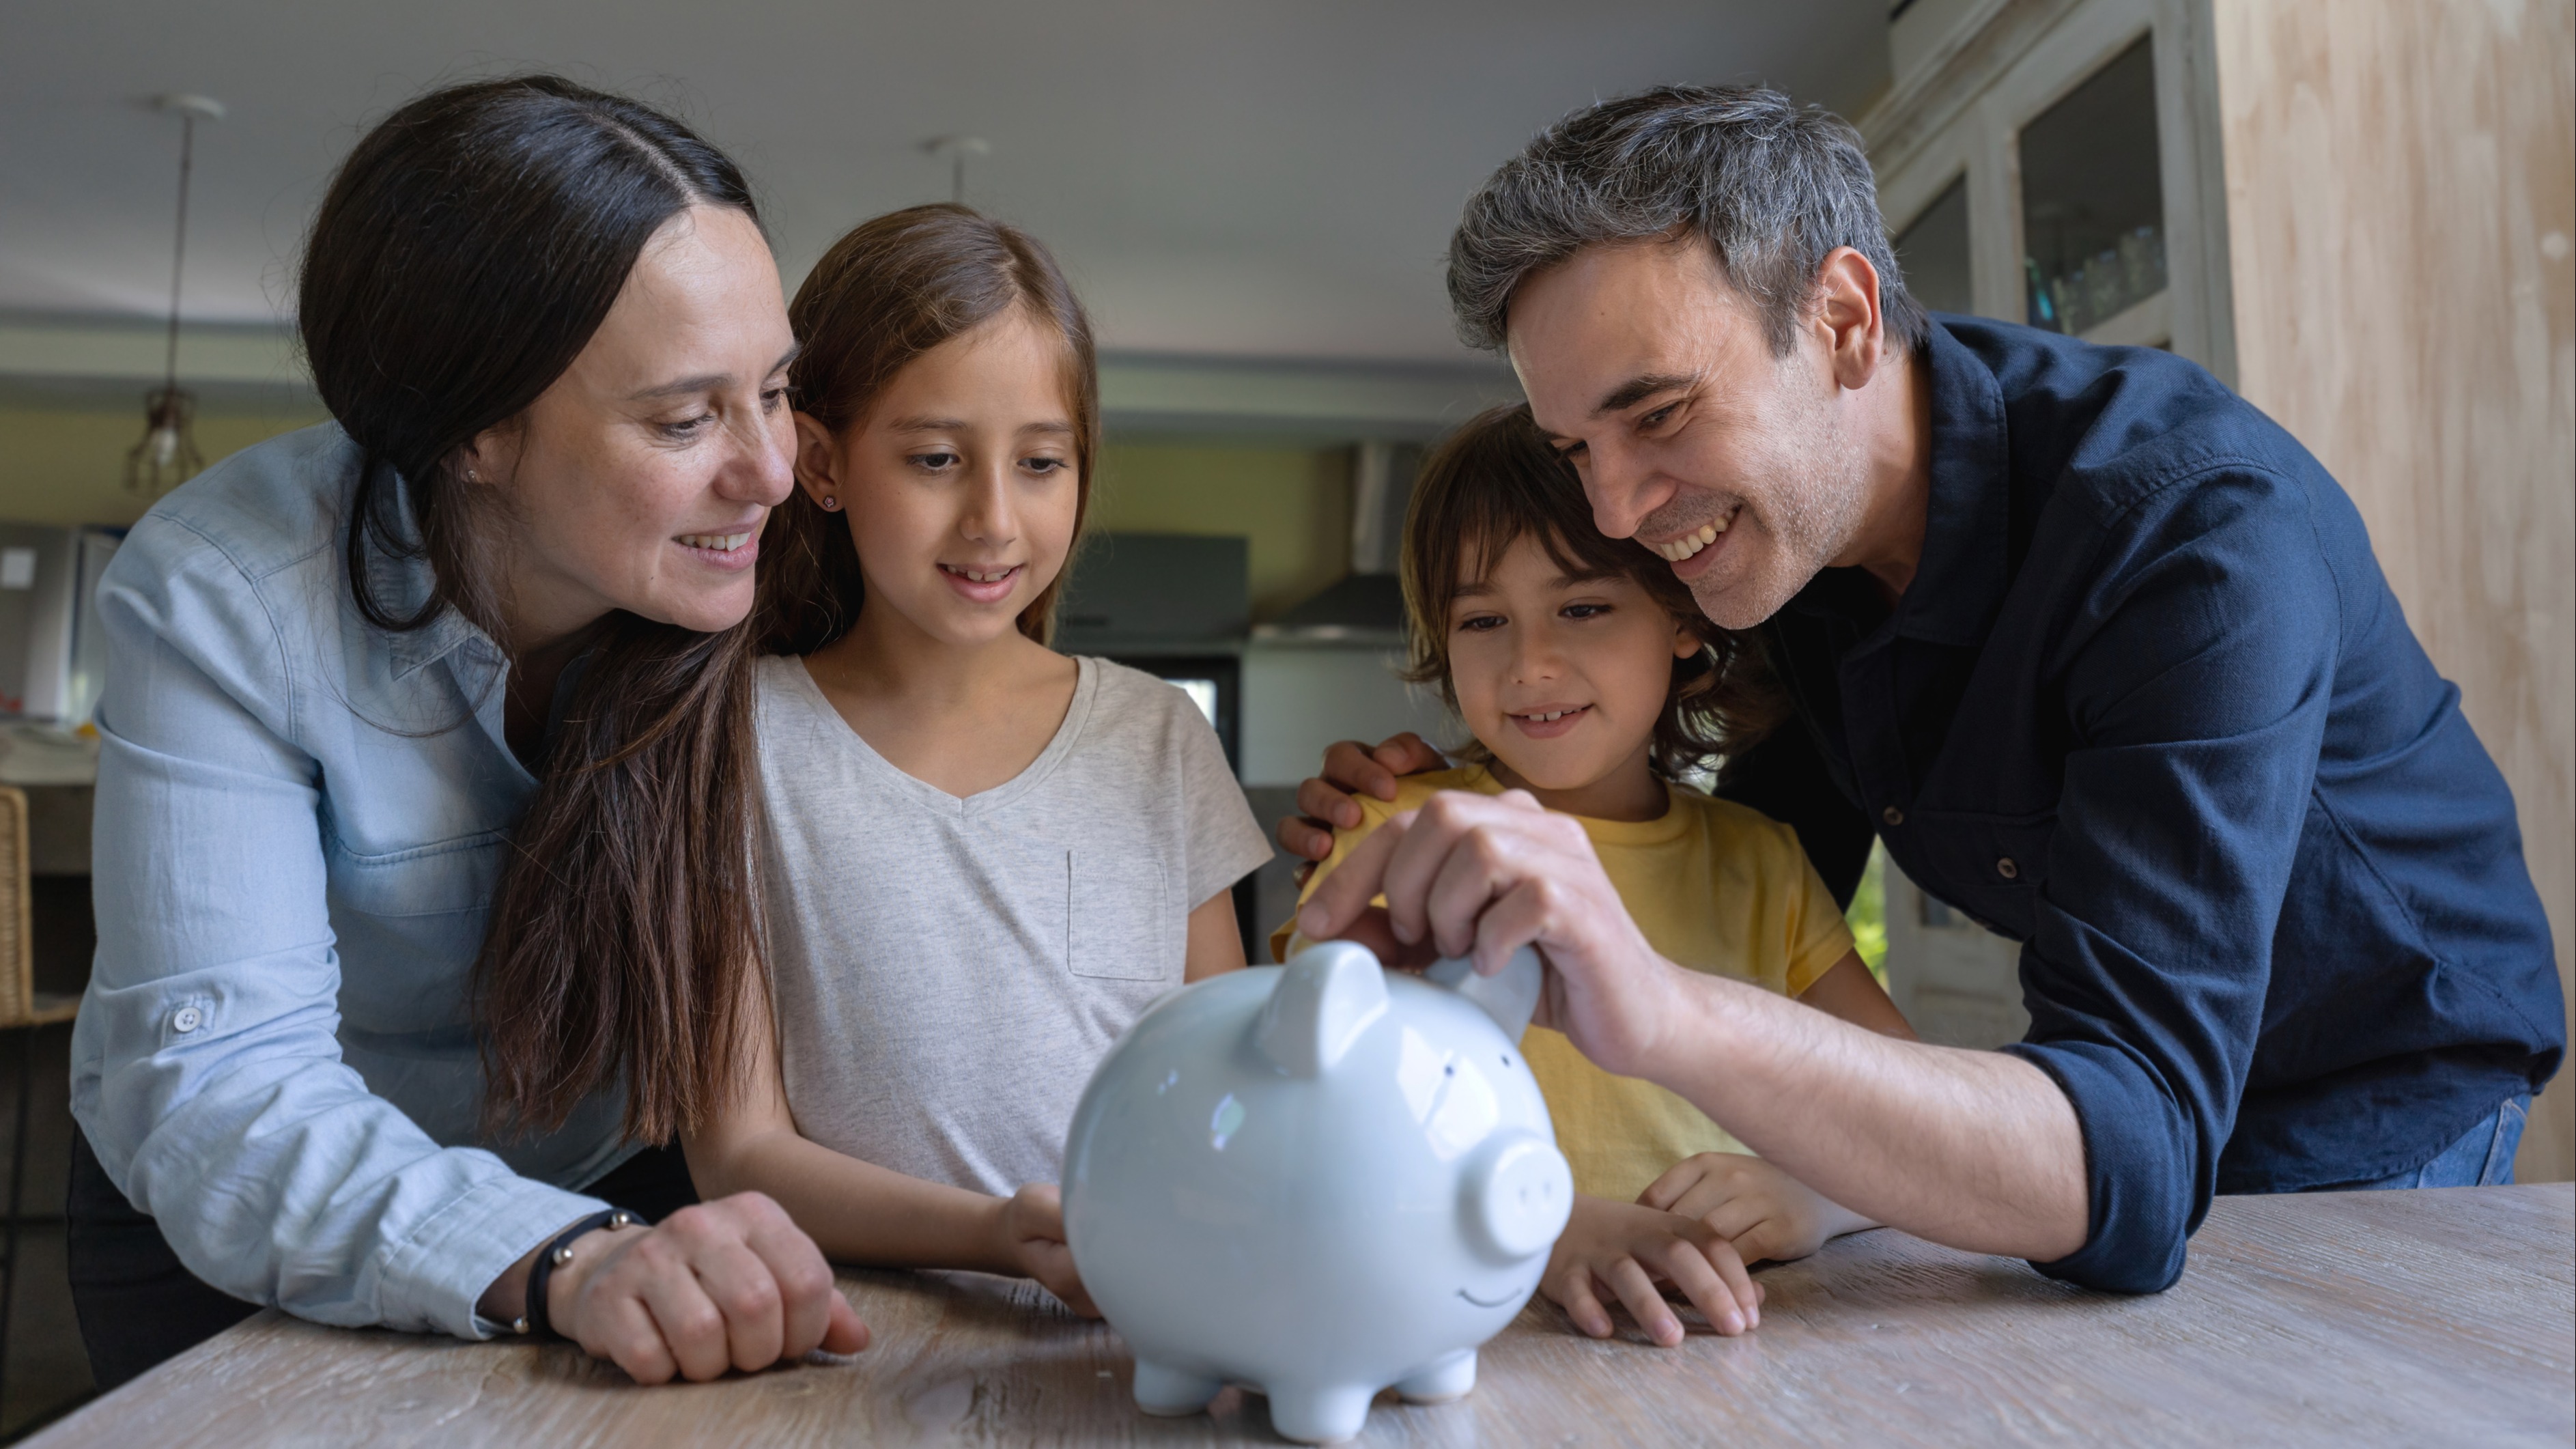 7 consejos para ahorrar dinero con una alcancía - Familia Finanzas